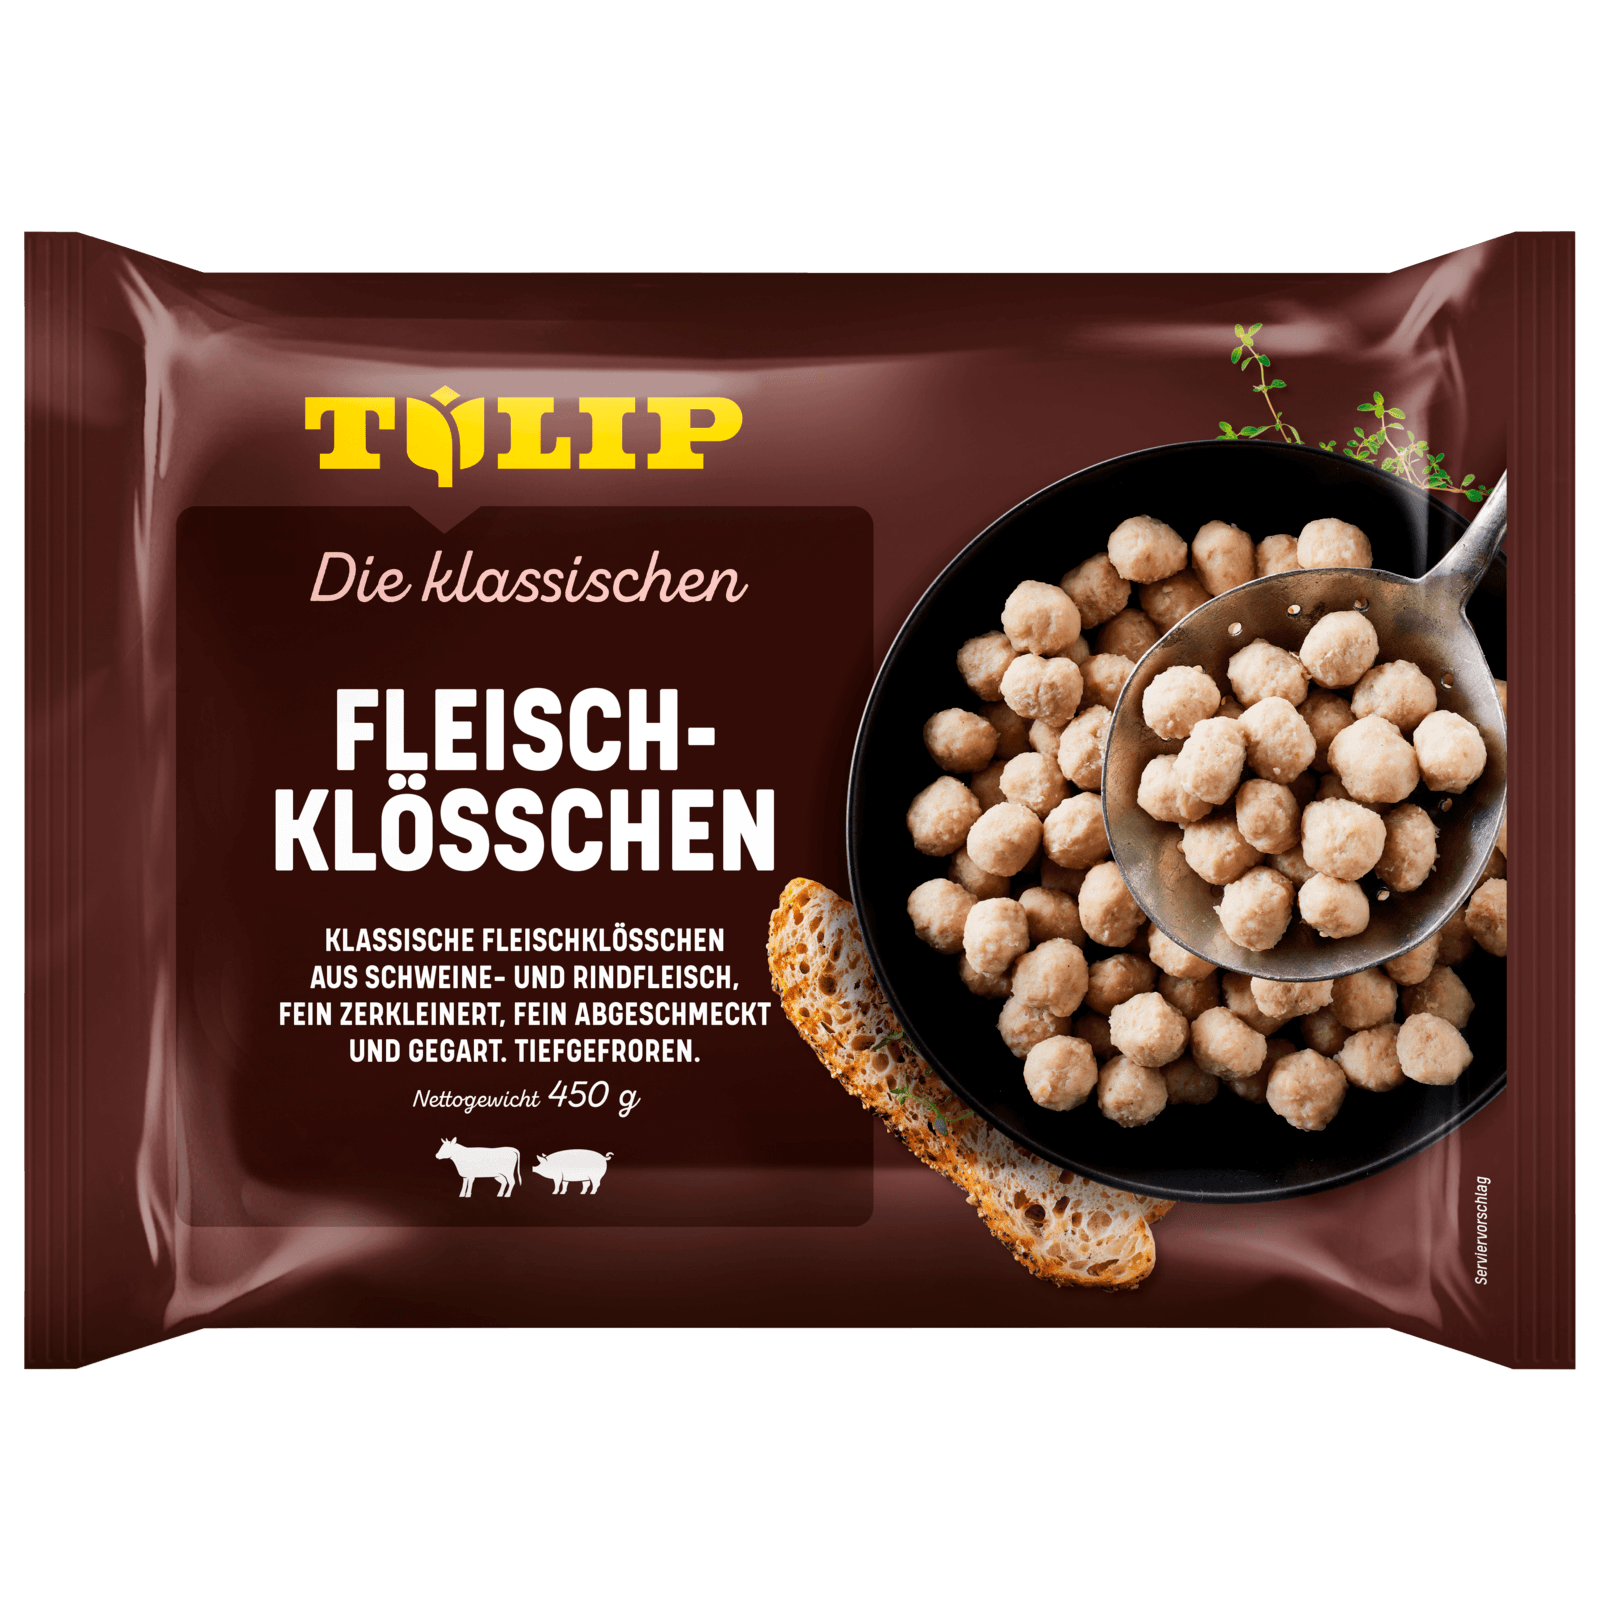 Tulip Suppeneinlagen Fleischklosschen 450g Bei Rewe Online Bestellen